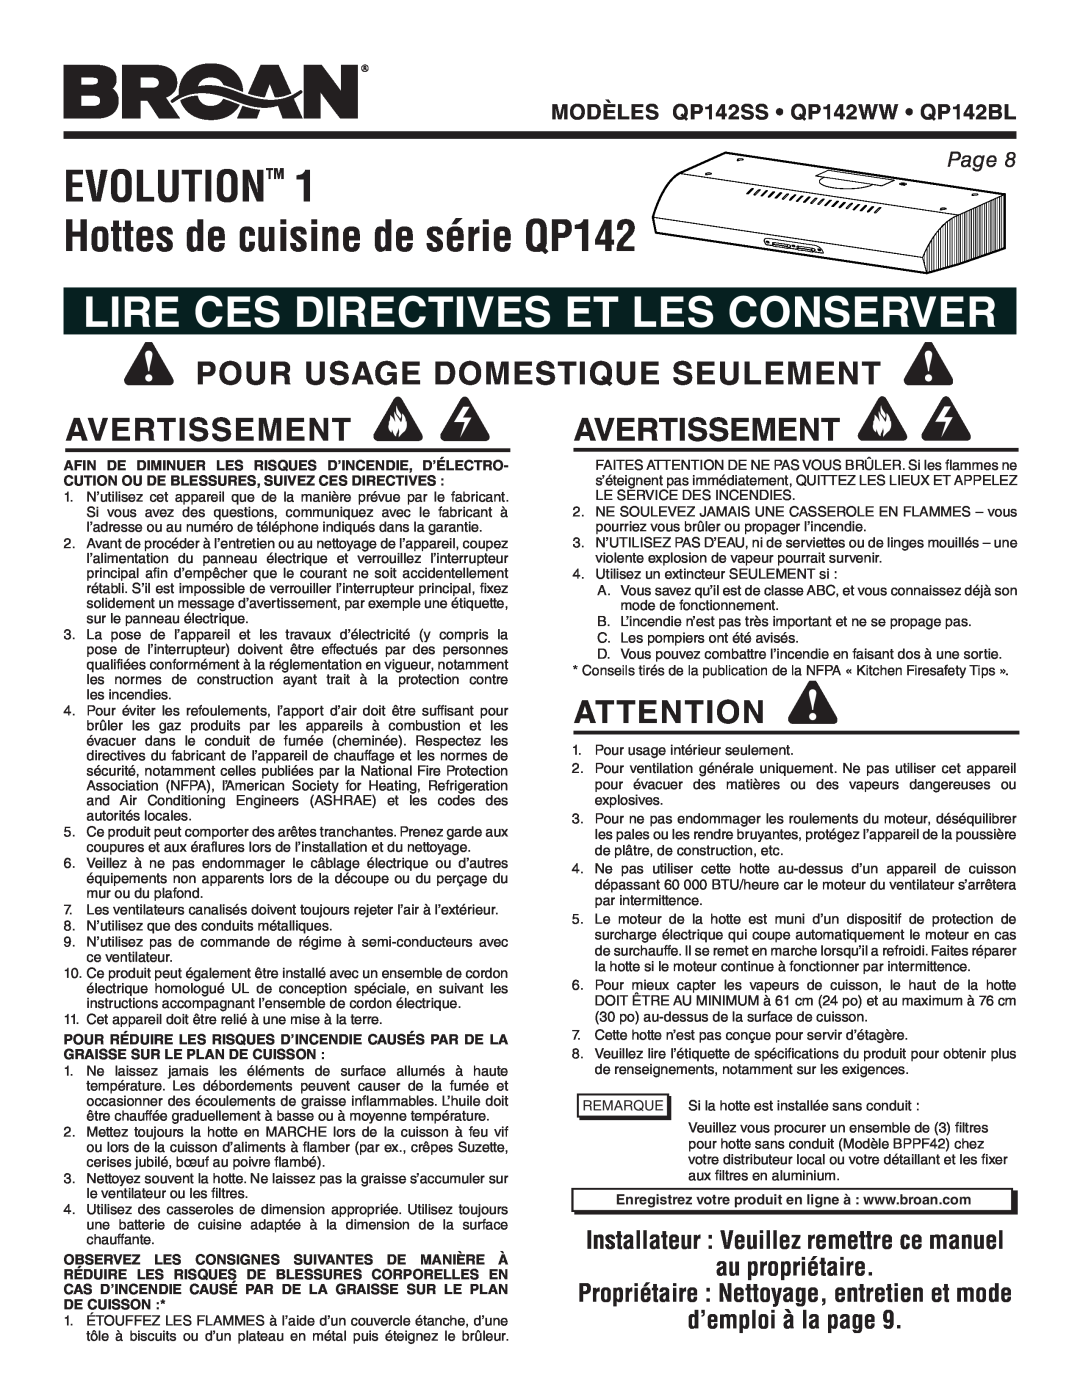 Broan QP142BL EVOLUTIONTM 1 Hottes de cuisine de série QP142, Lire Ces Directives Et Les Conserver, au propriétaire, Page 